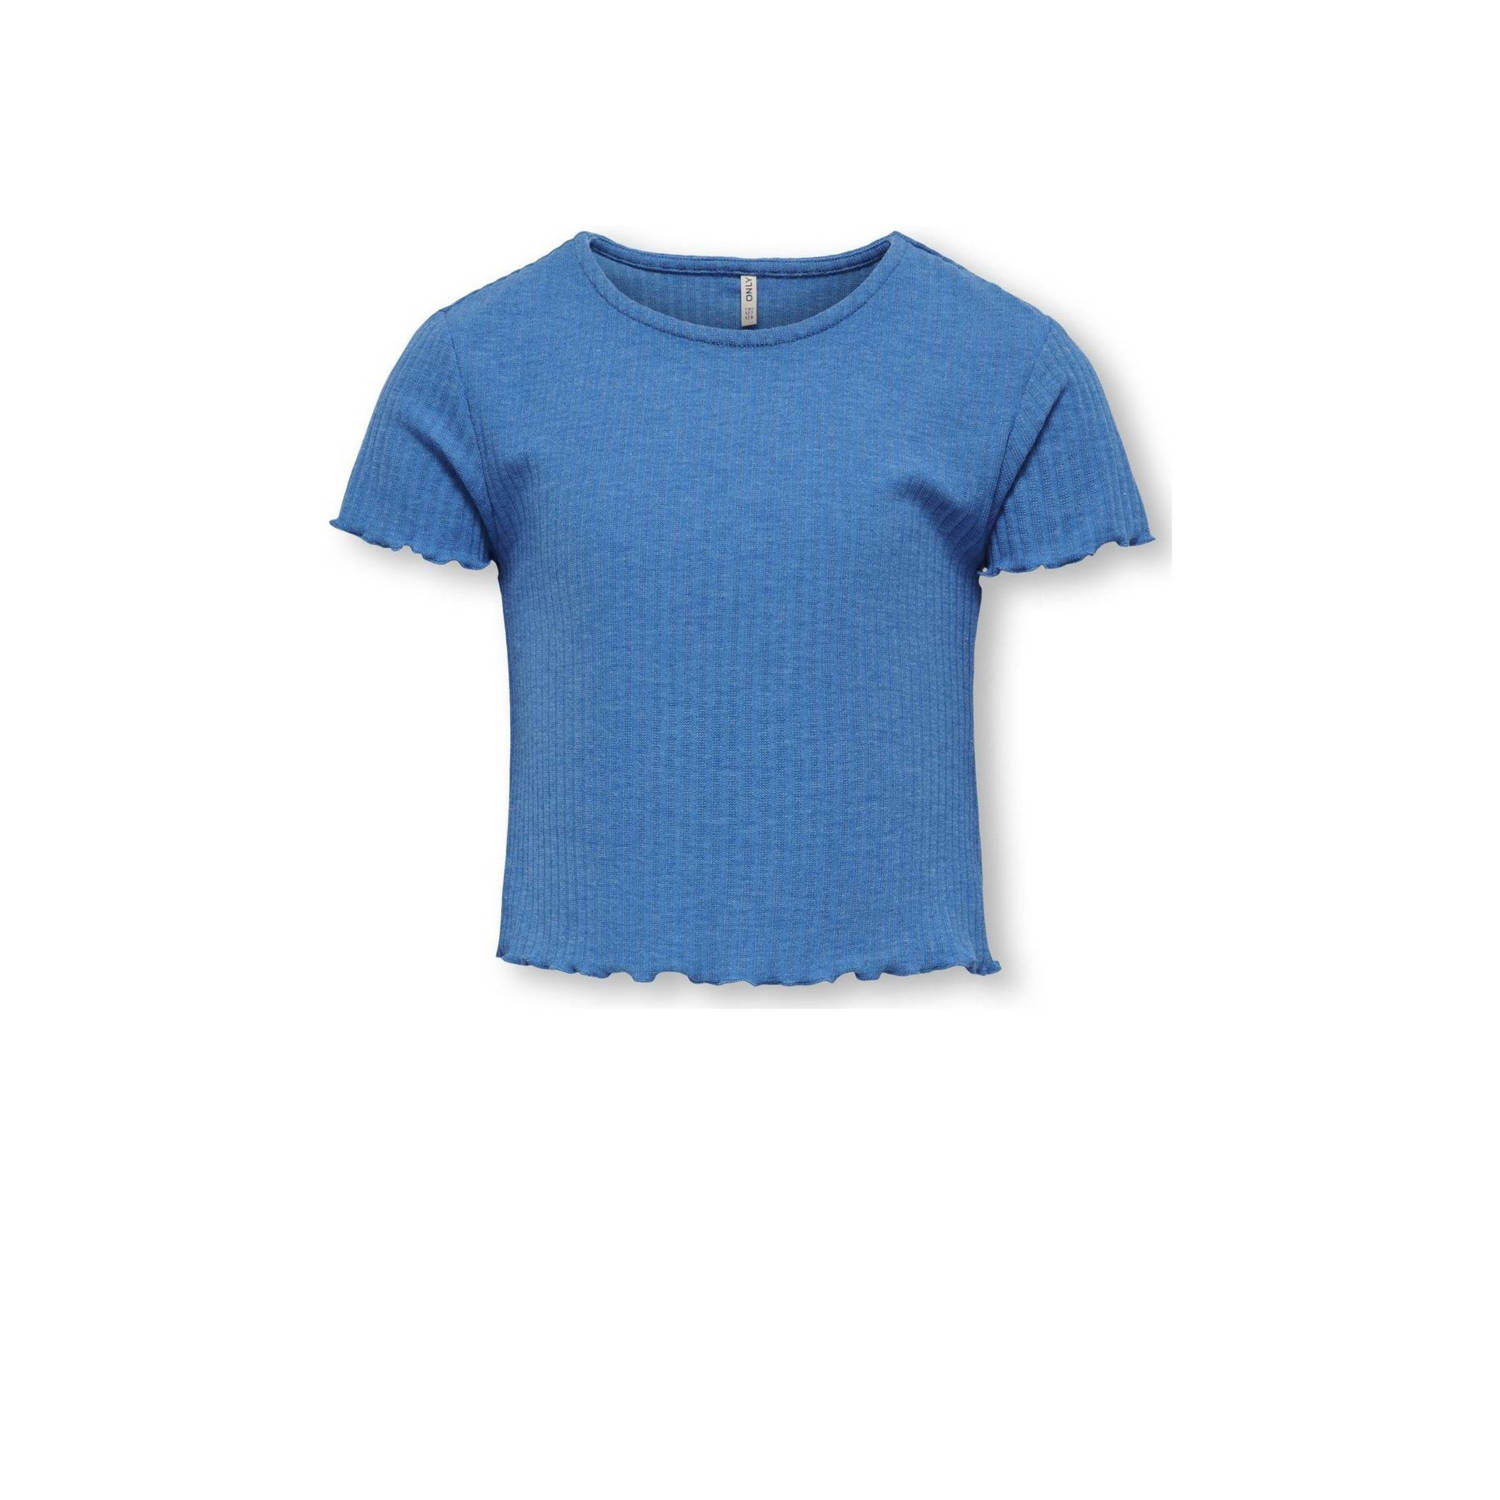 Only KIDS GIRL ribgebreid T-shirt KOGNELLA middenblauw Meisjes Polyester Ronde hals 110 116